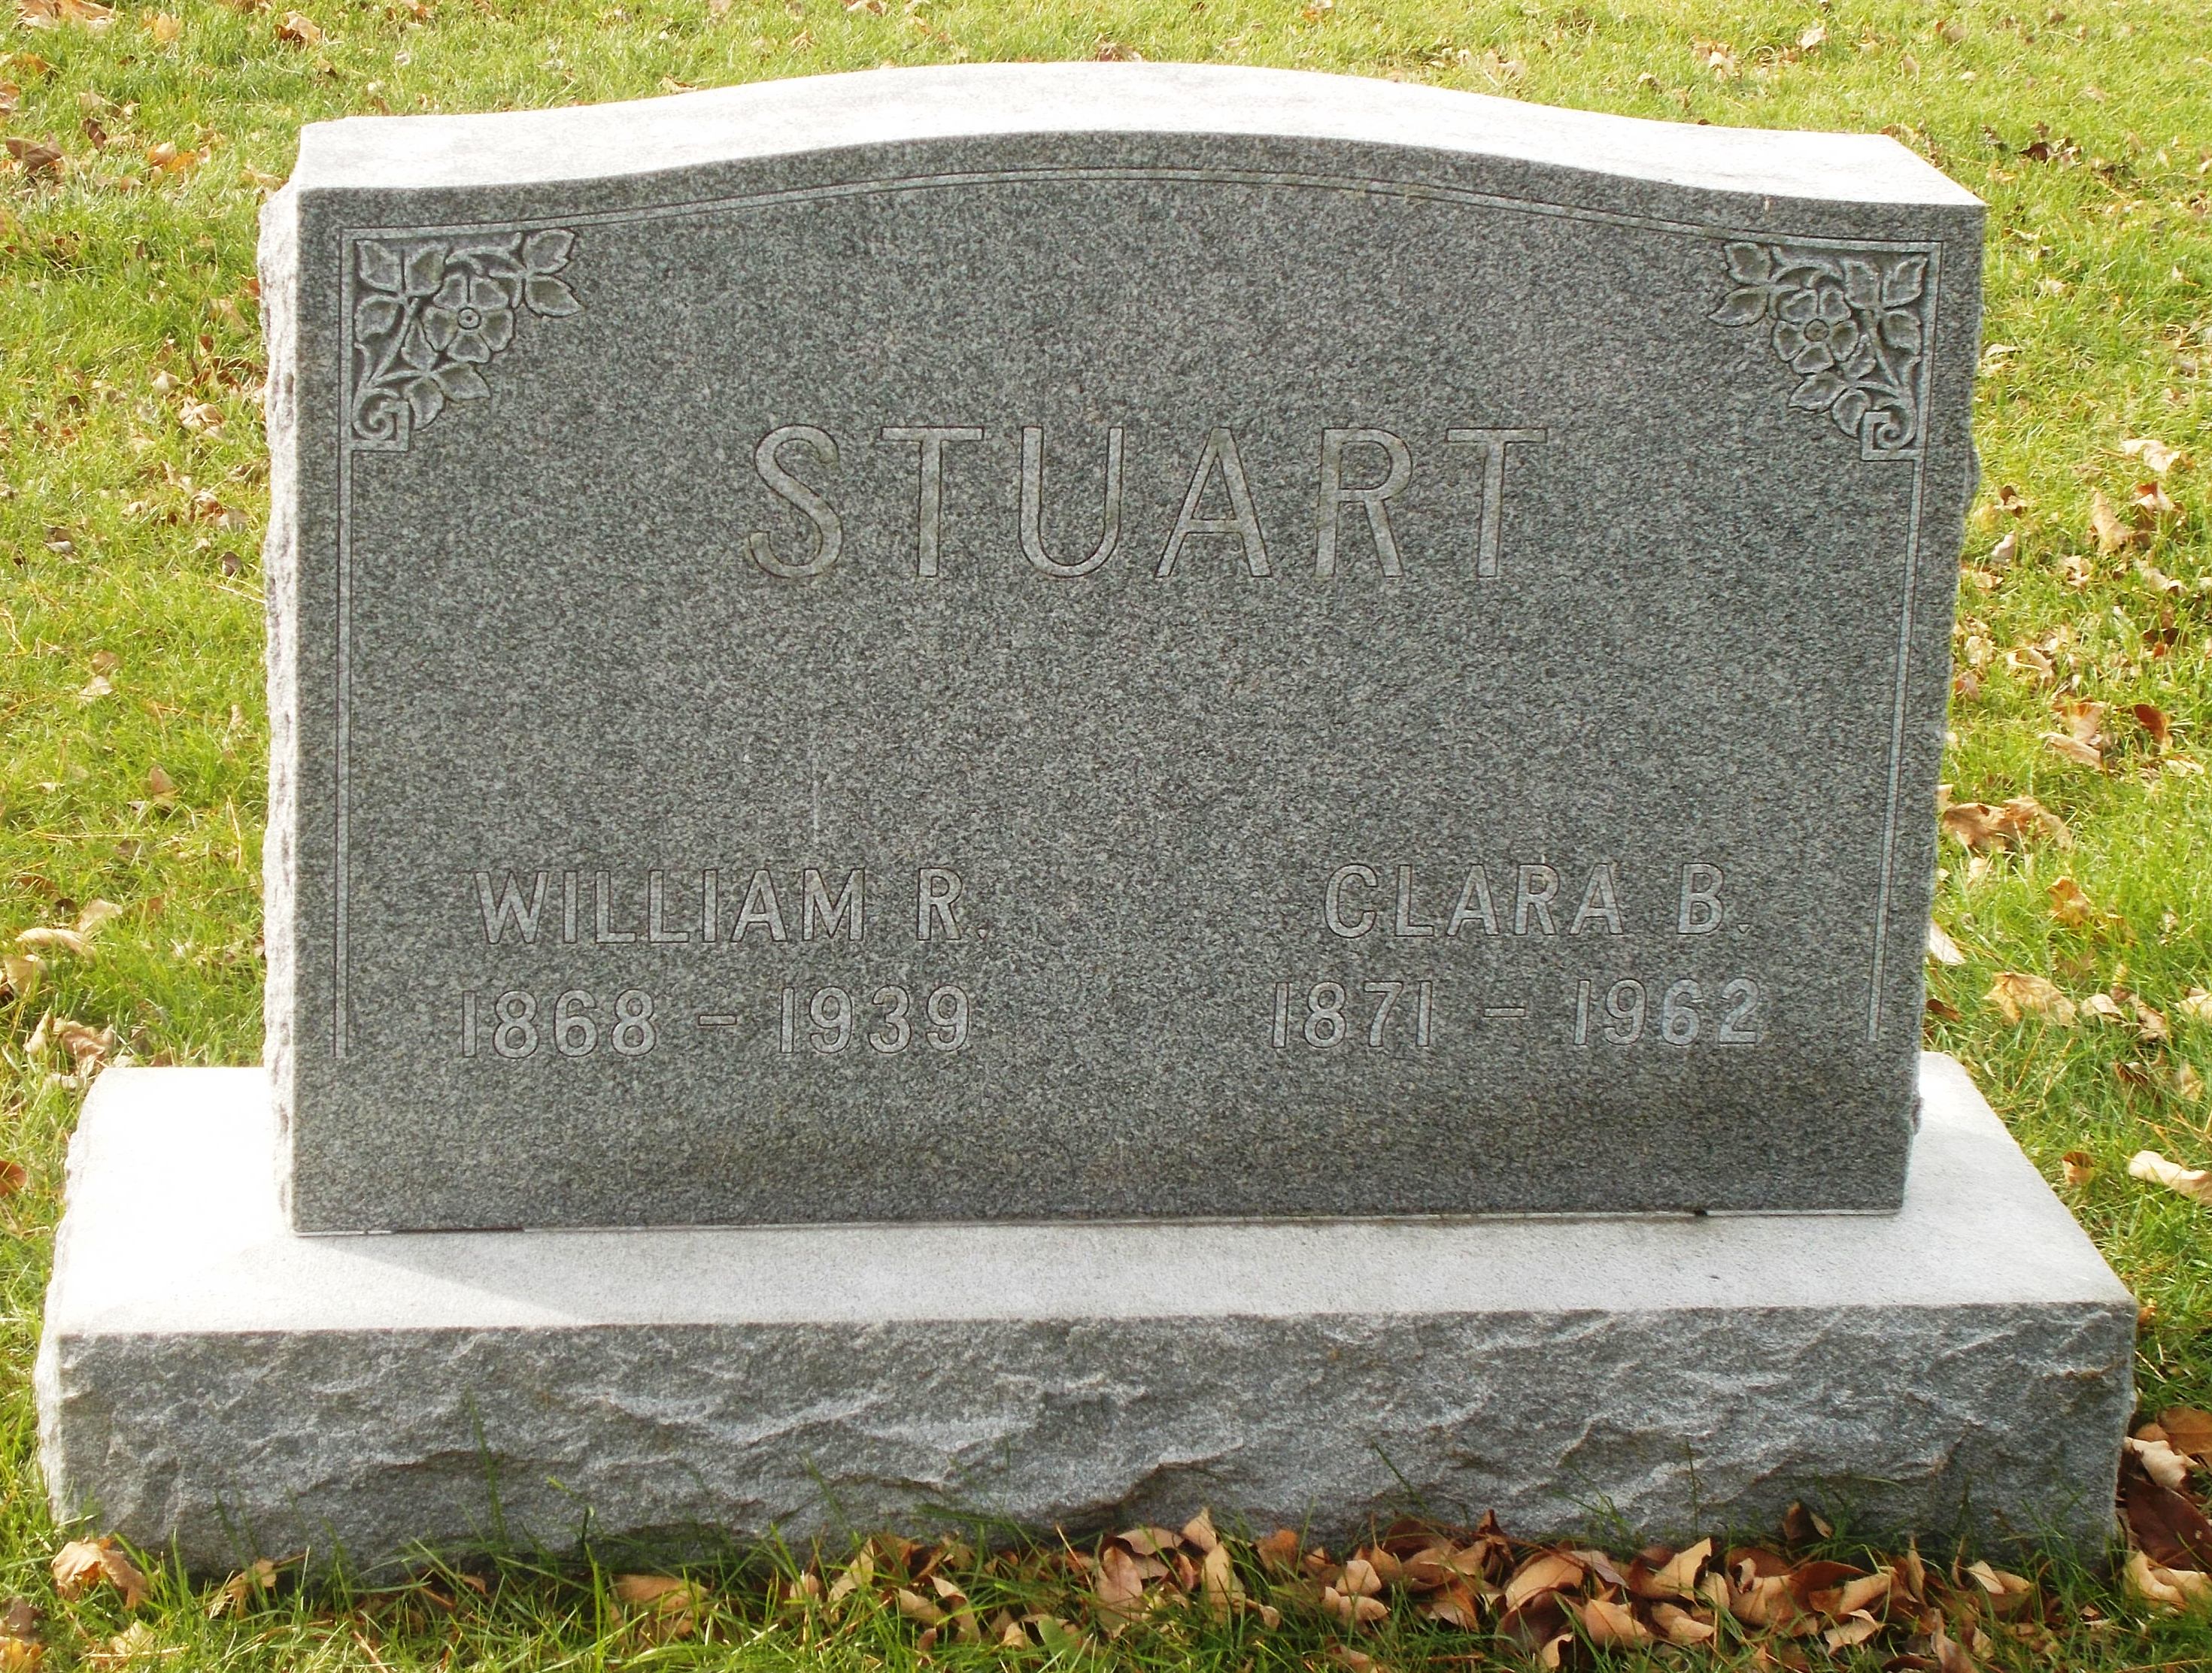 William R Stuart